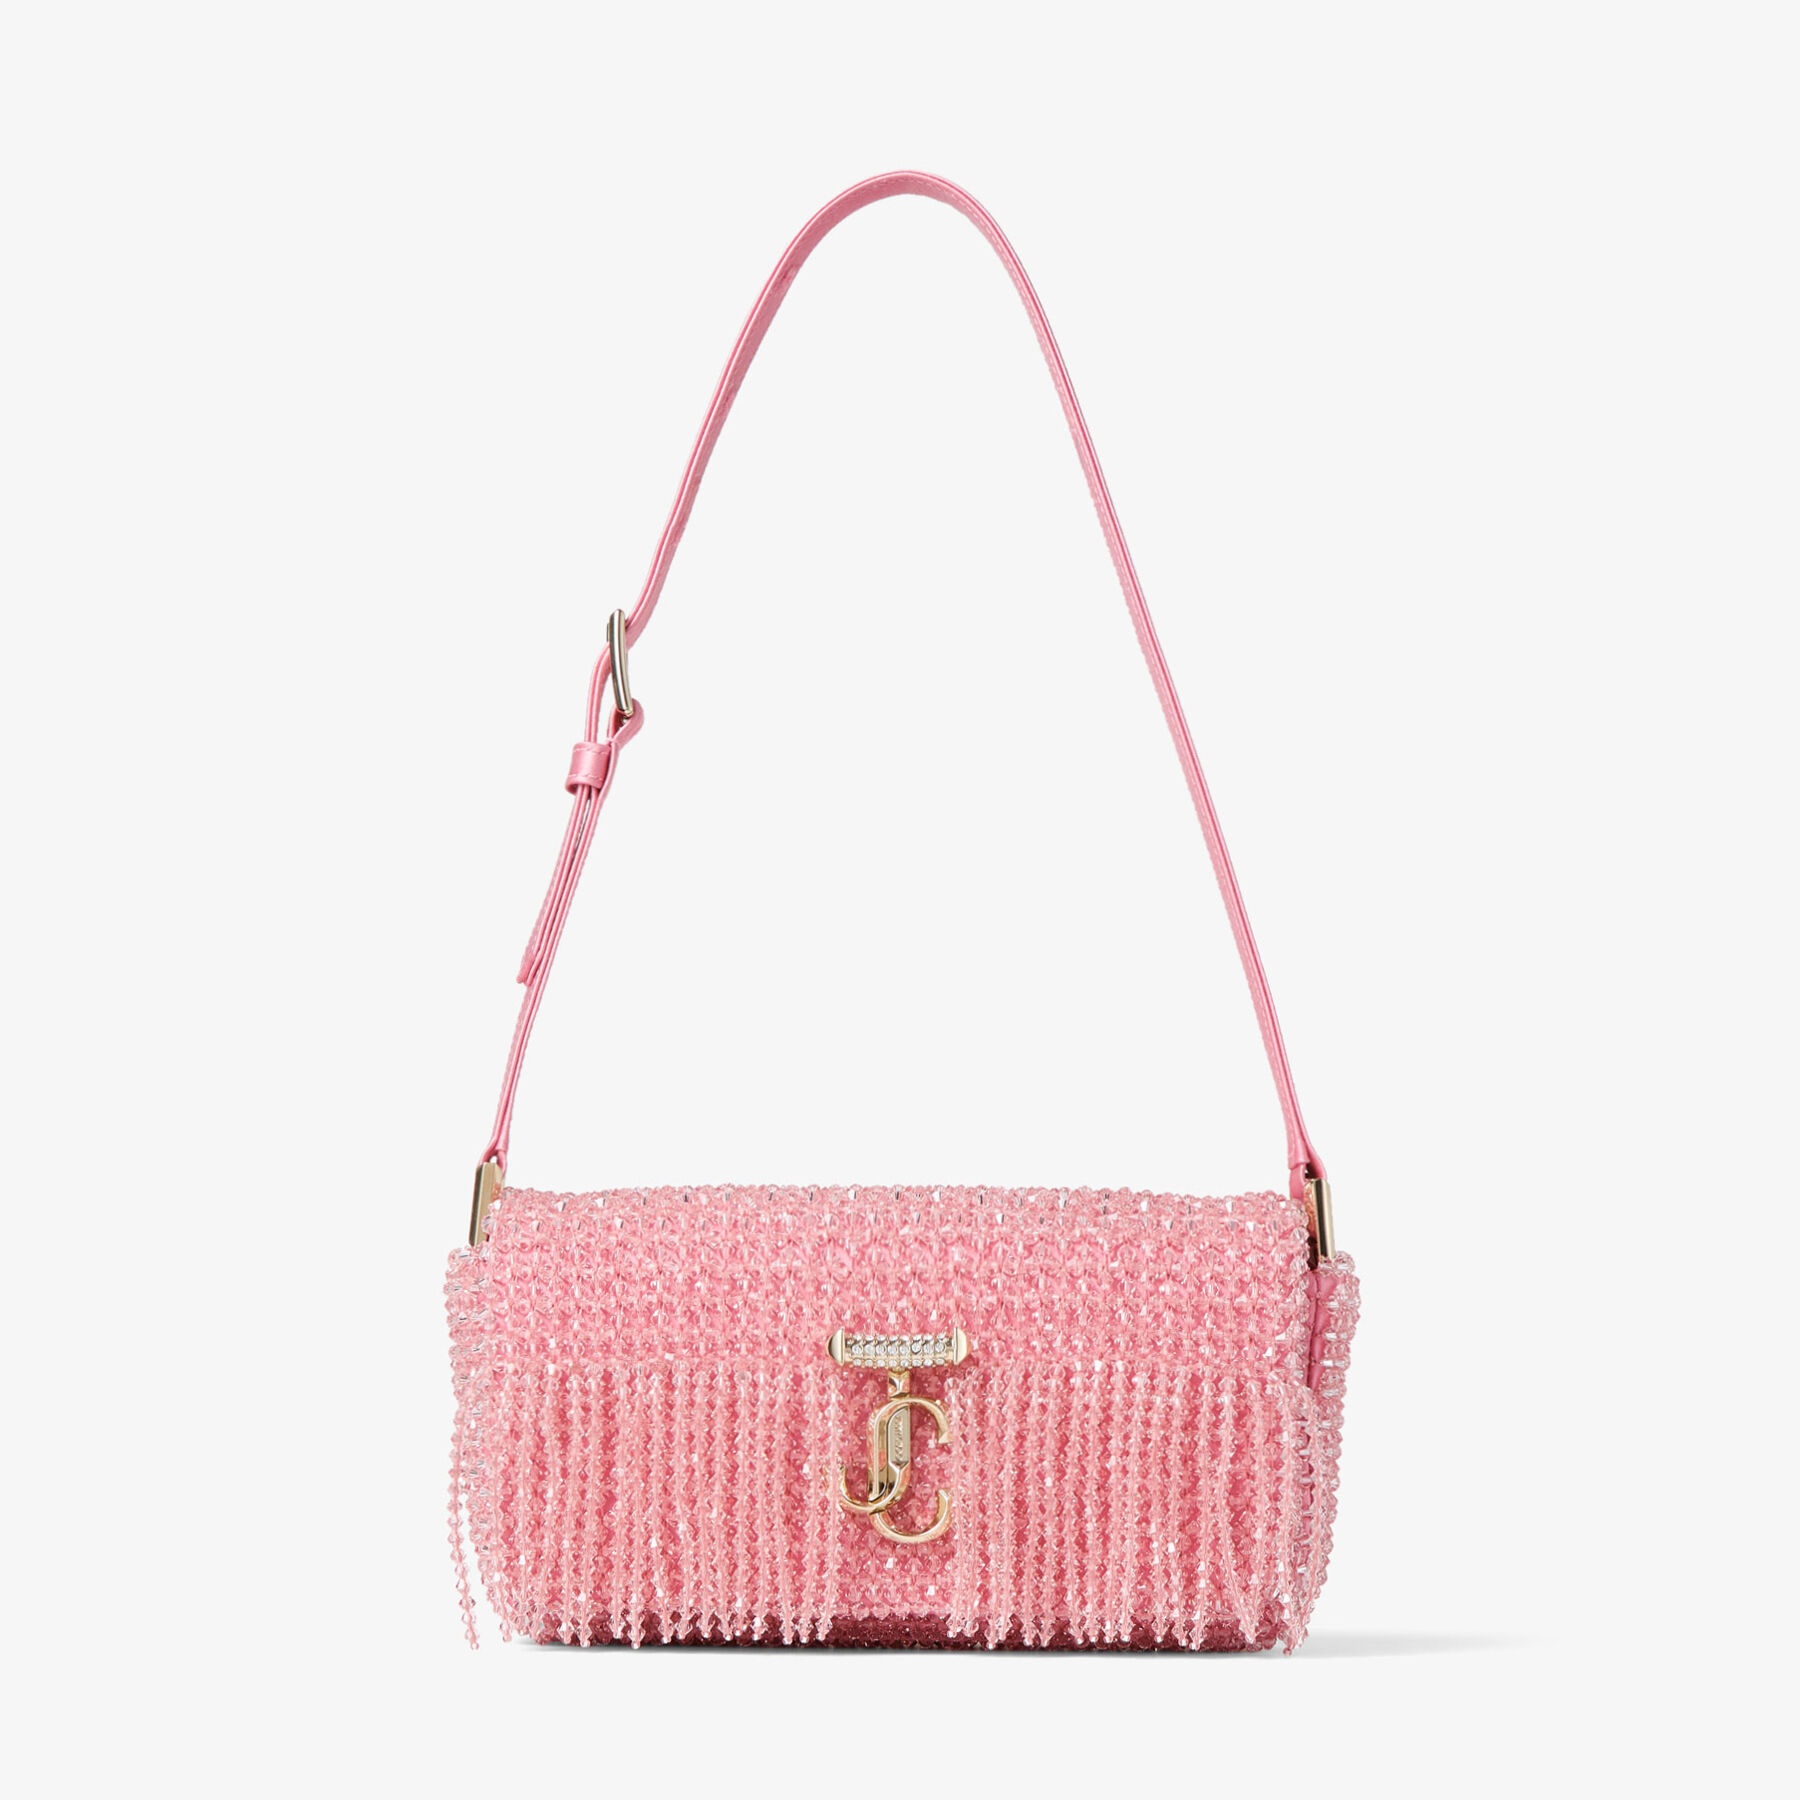 Avenue Mini Shoulder
Candy Pink Satin Mini Shoulder Bag with Crystal Fringe - 1